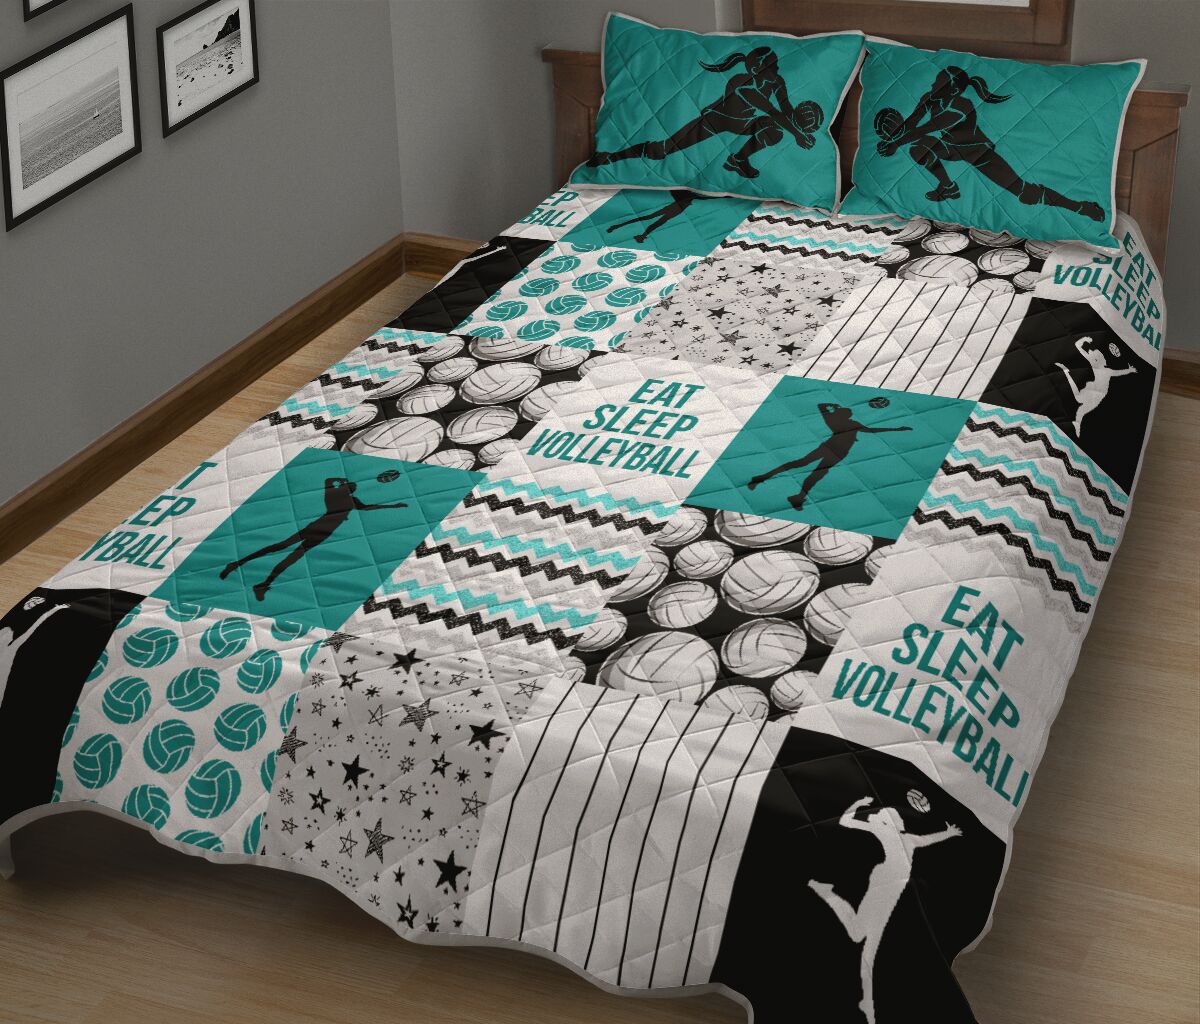 Eat sleep Volleyball shape quilt1